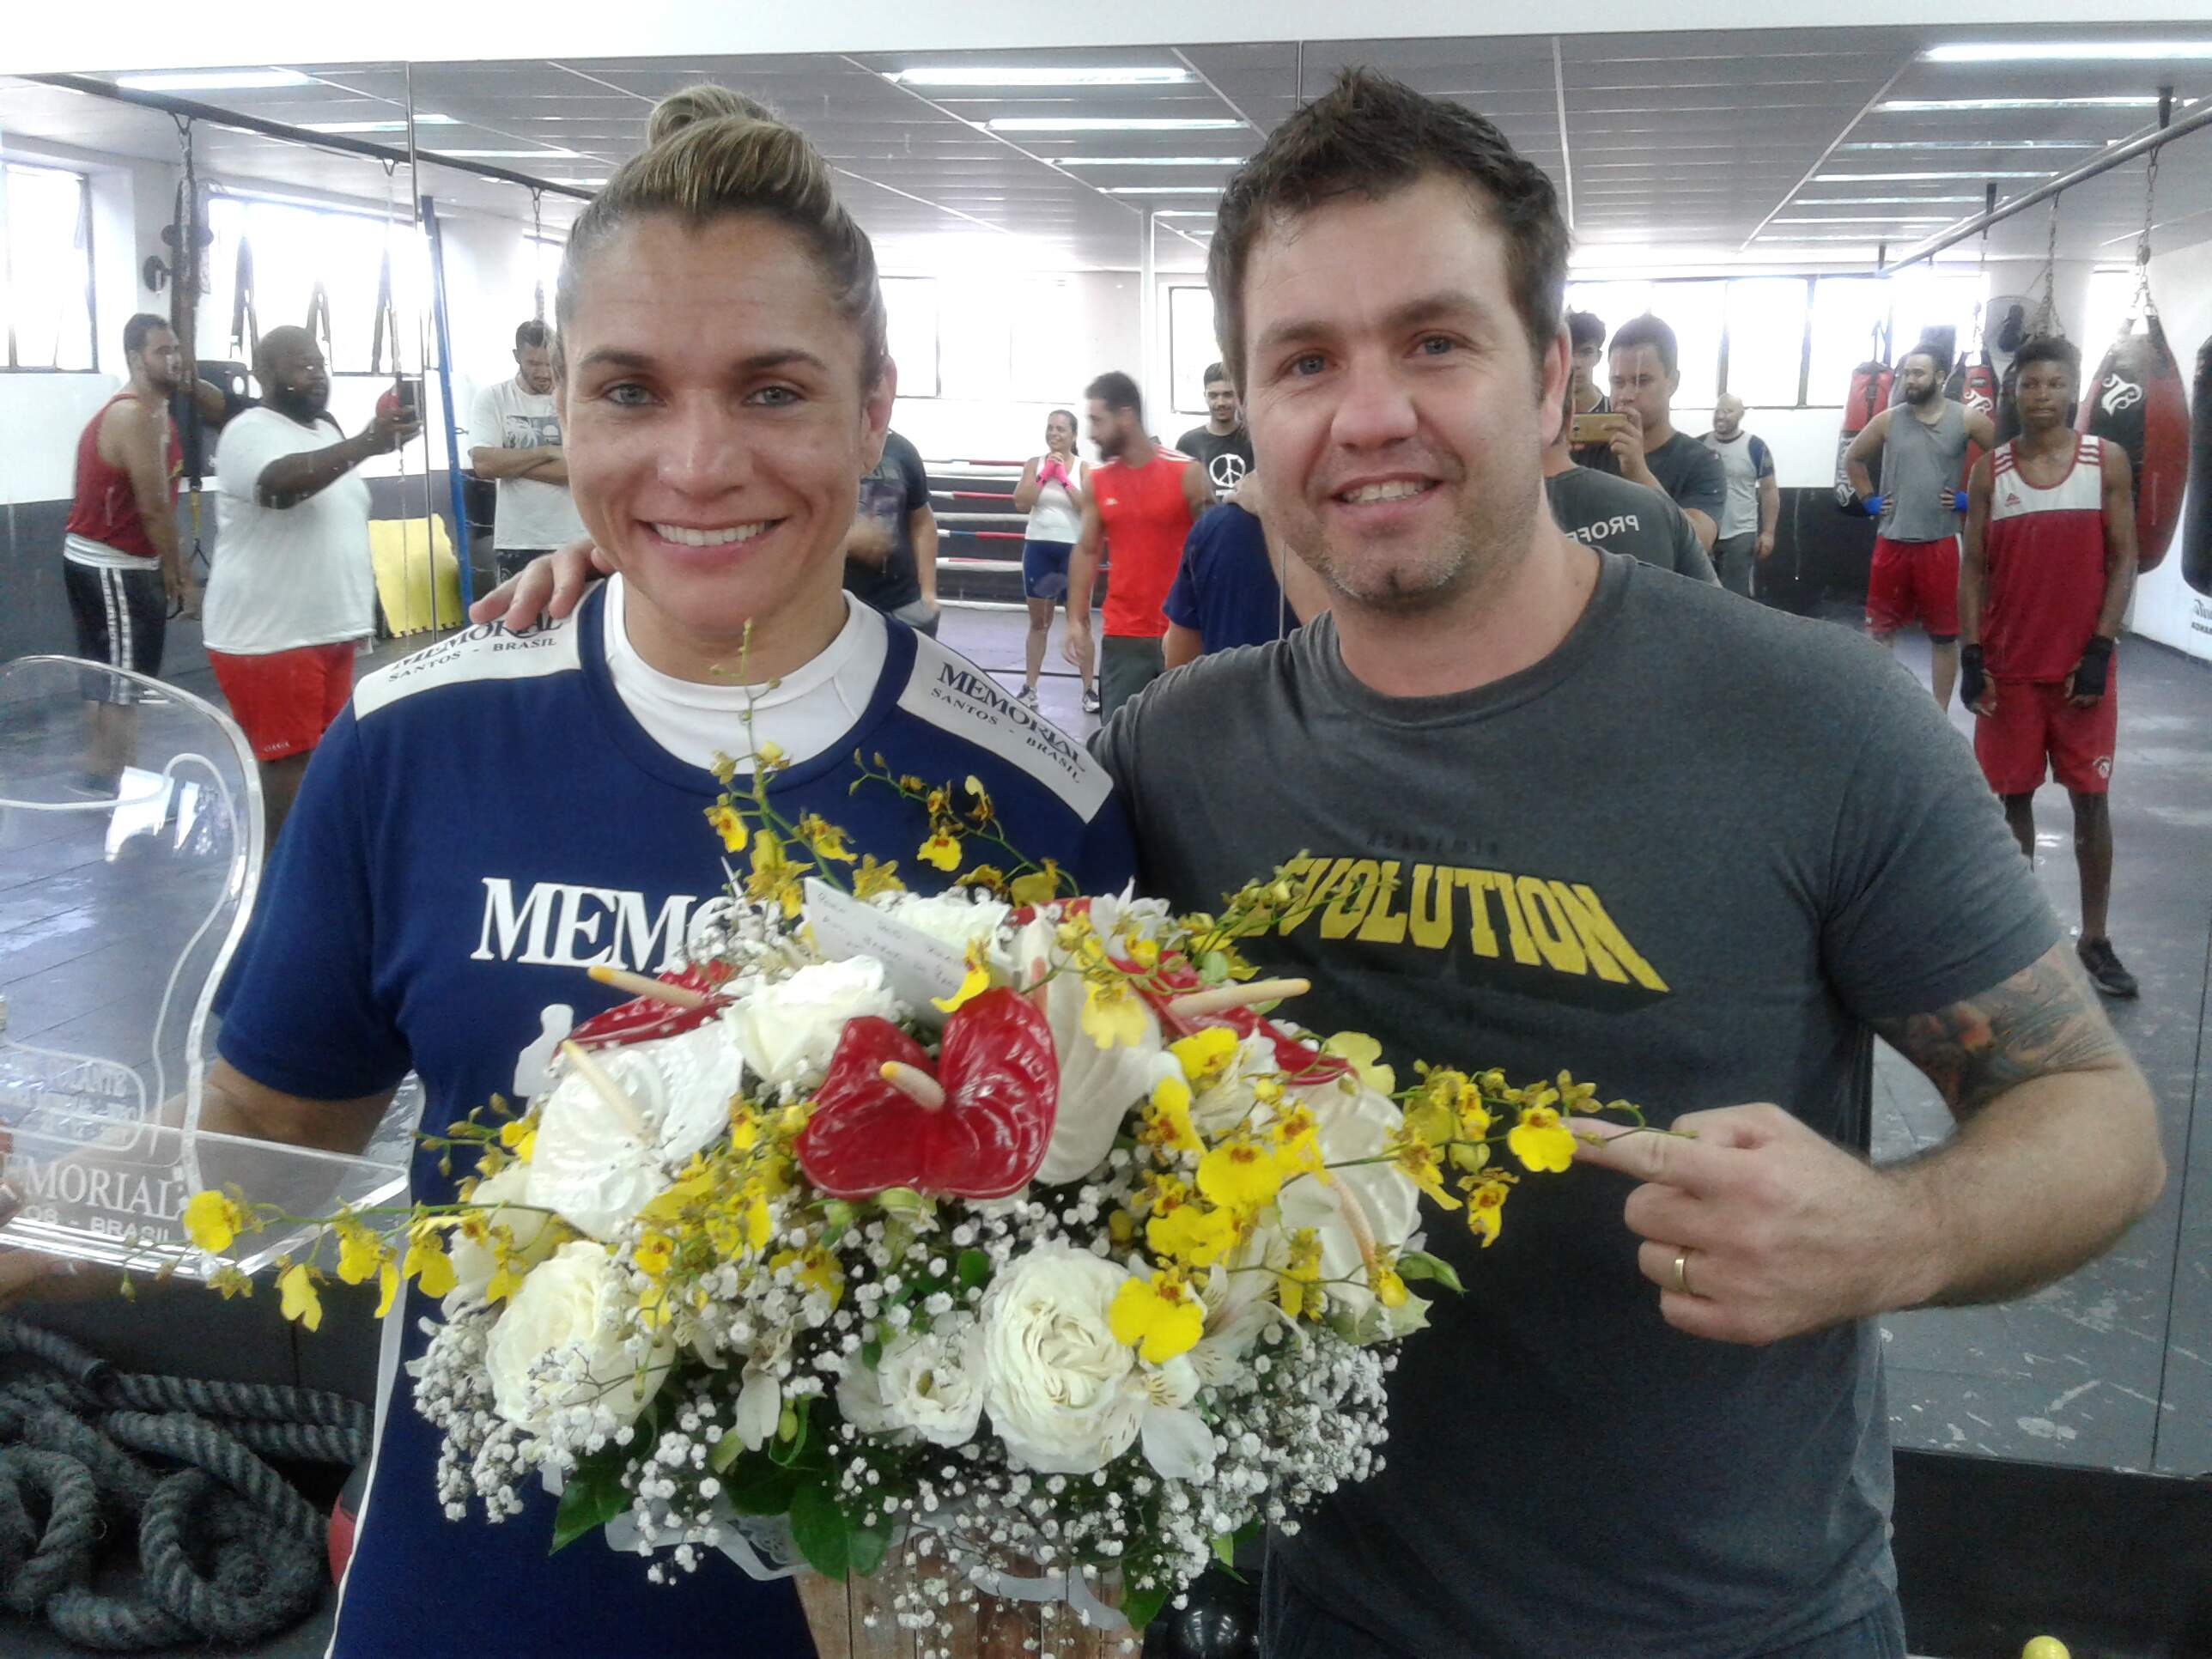 Rose Volante com seu técnico, troféu e flores recebidas na homenagem